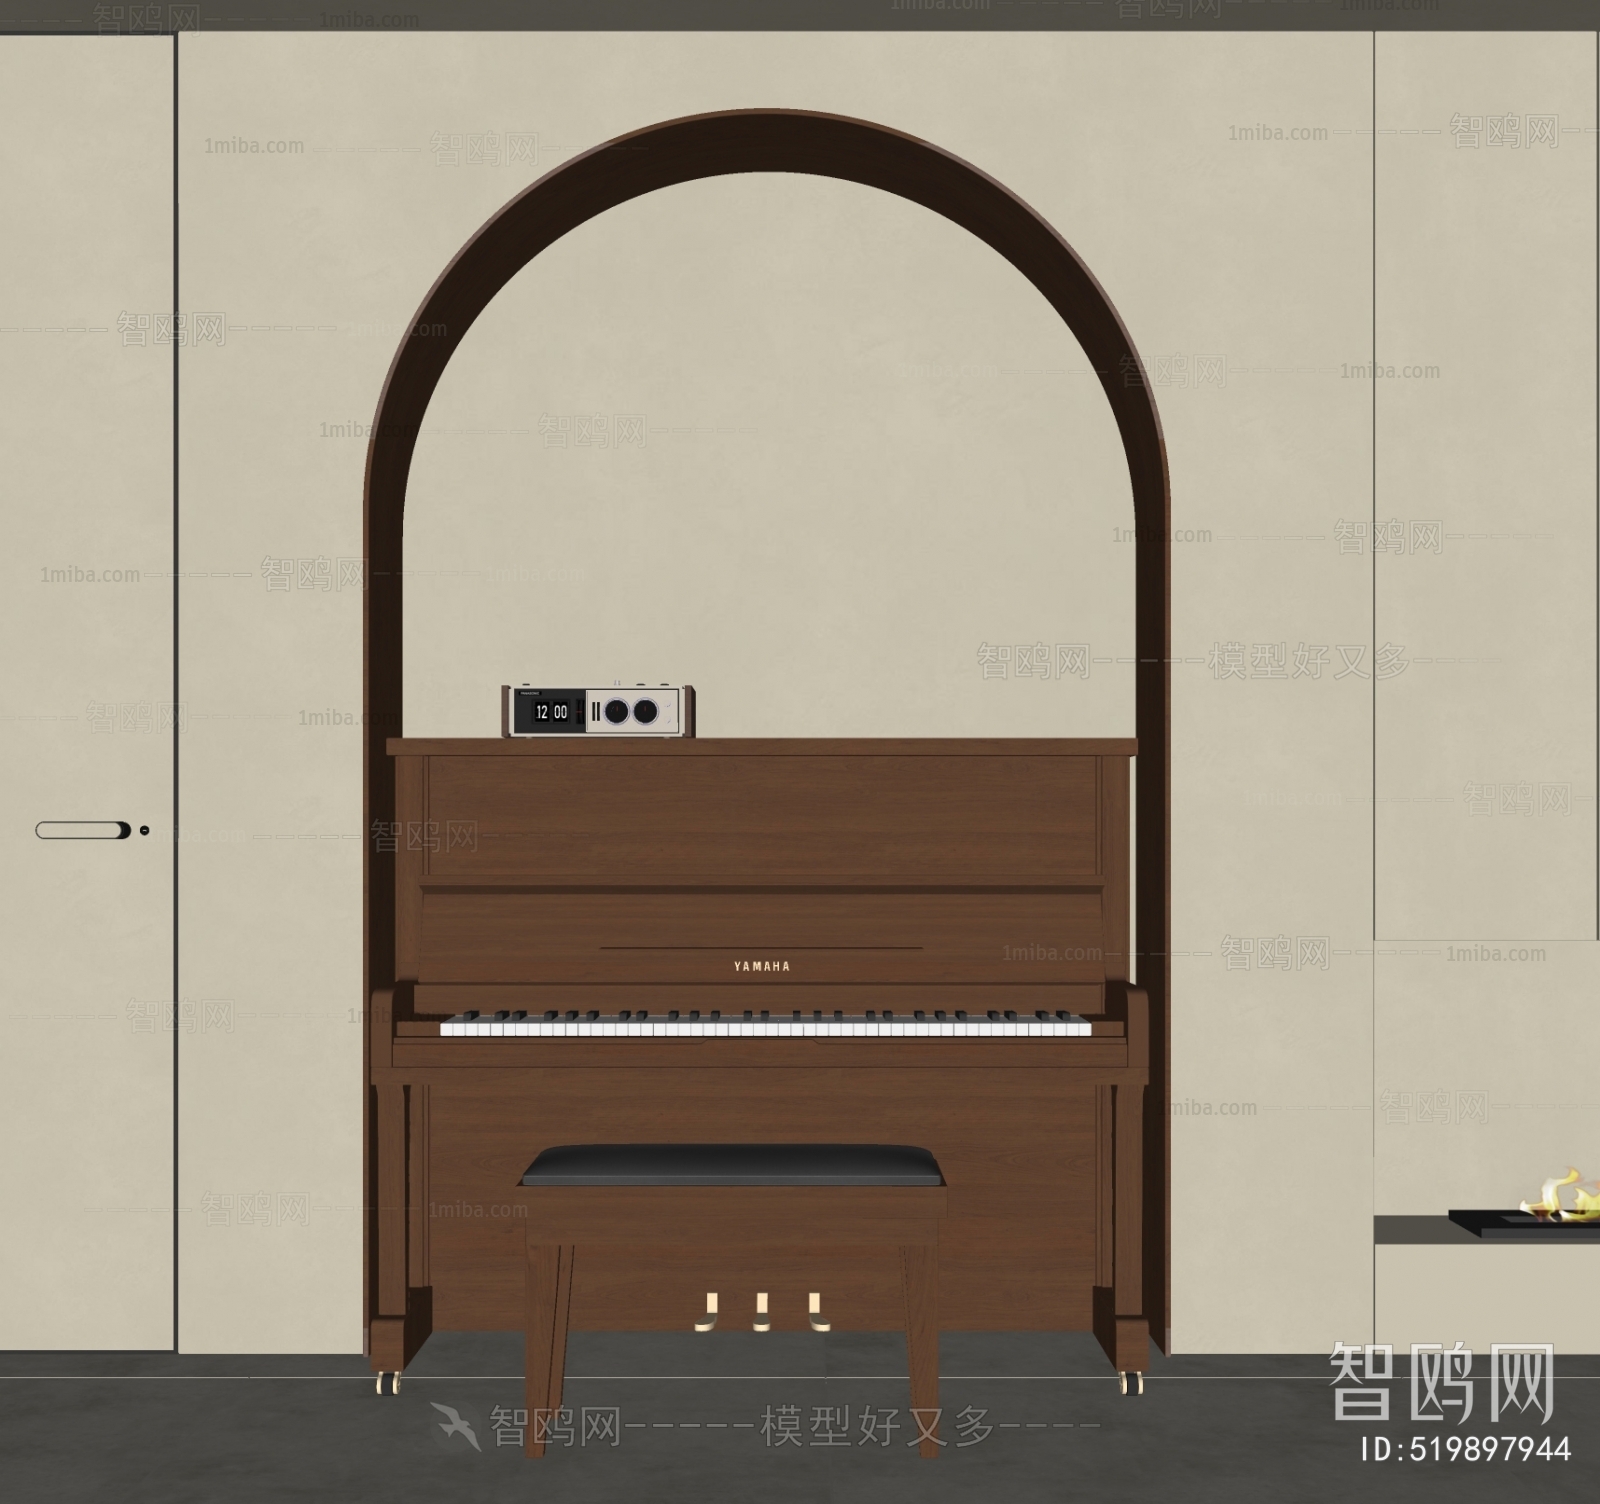 Modern Retro Style Piano